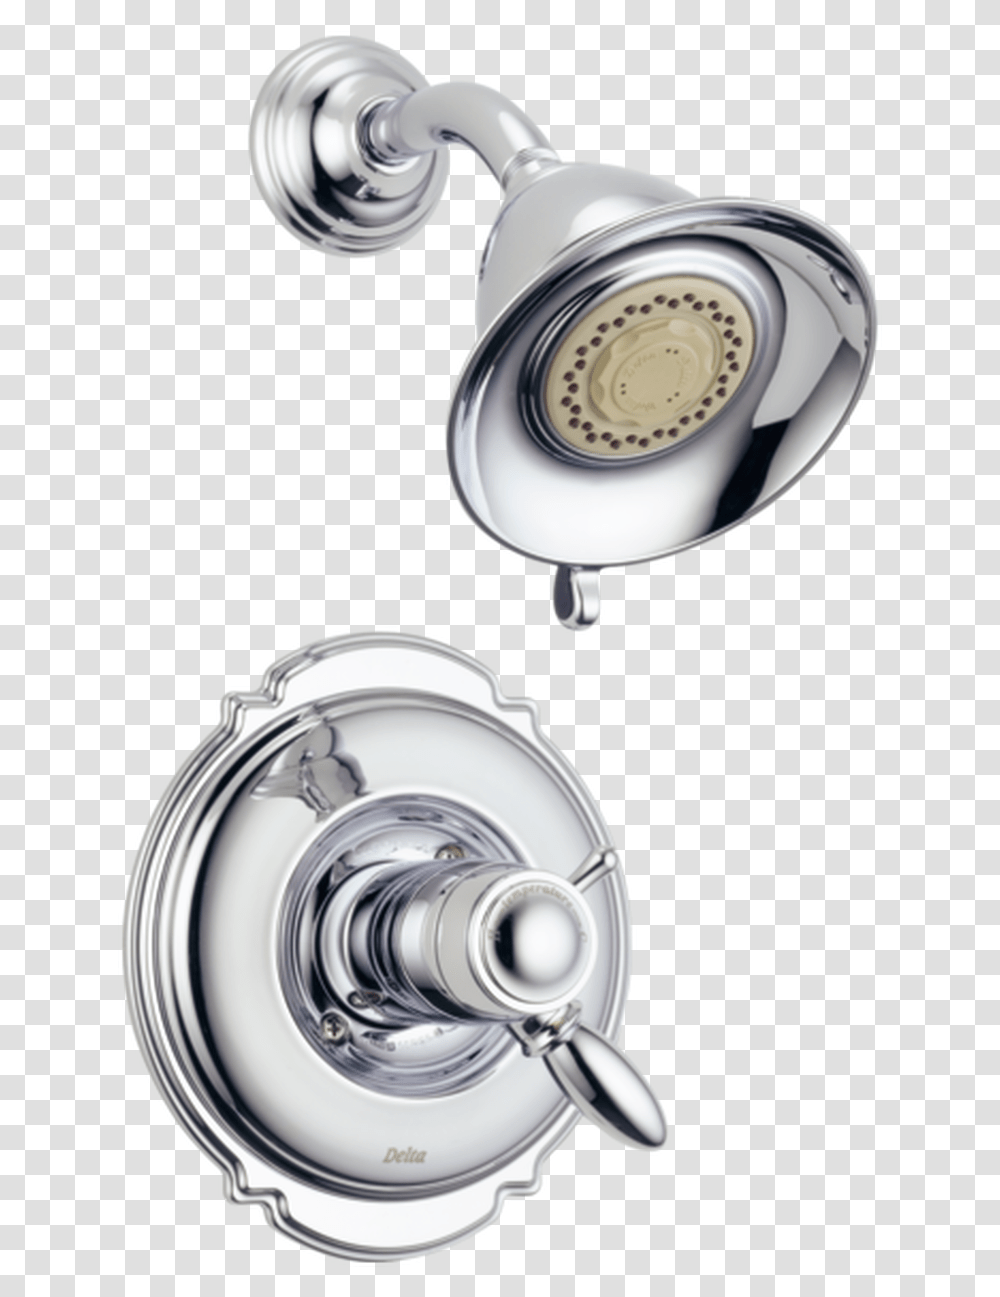 Delta Faucet Trinsic 14 Series Single Function Shower Delta Shower Faucet, Electronics Transparent Png